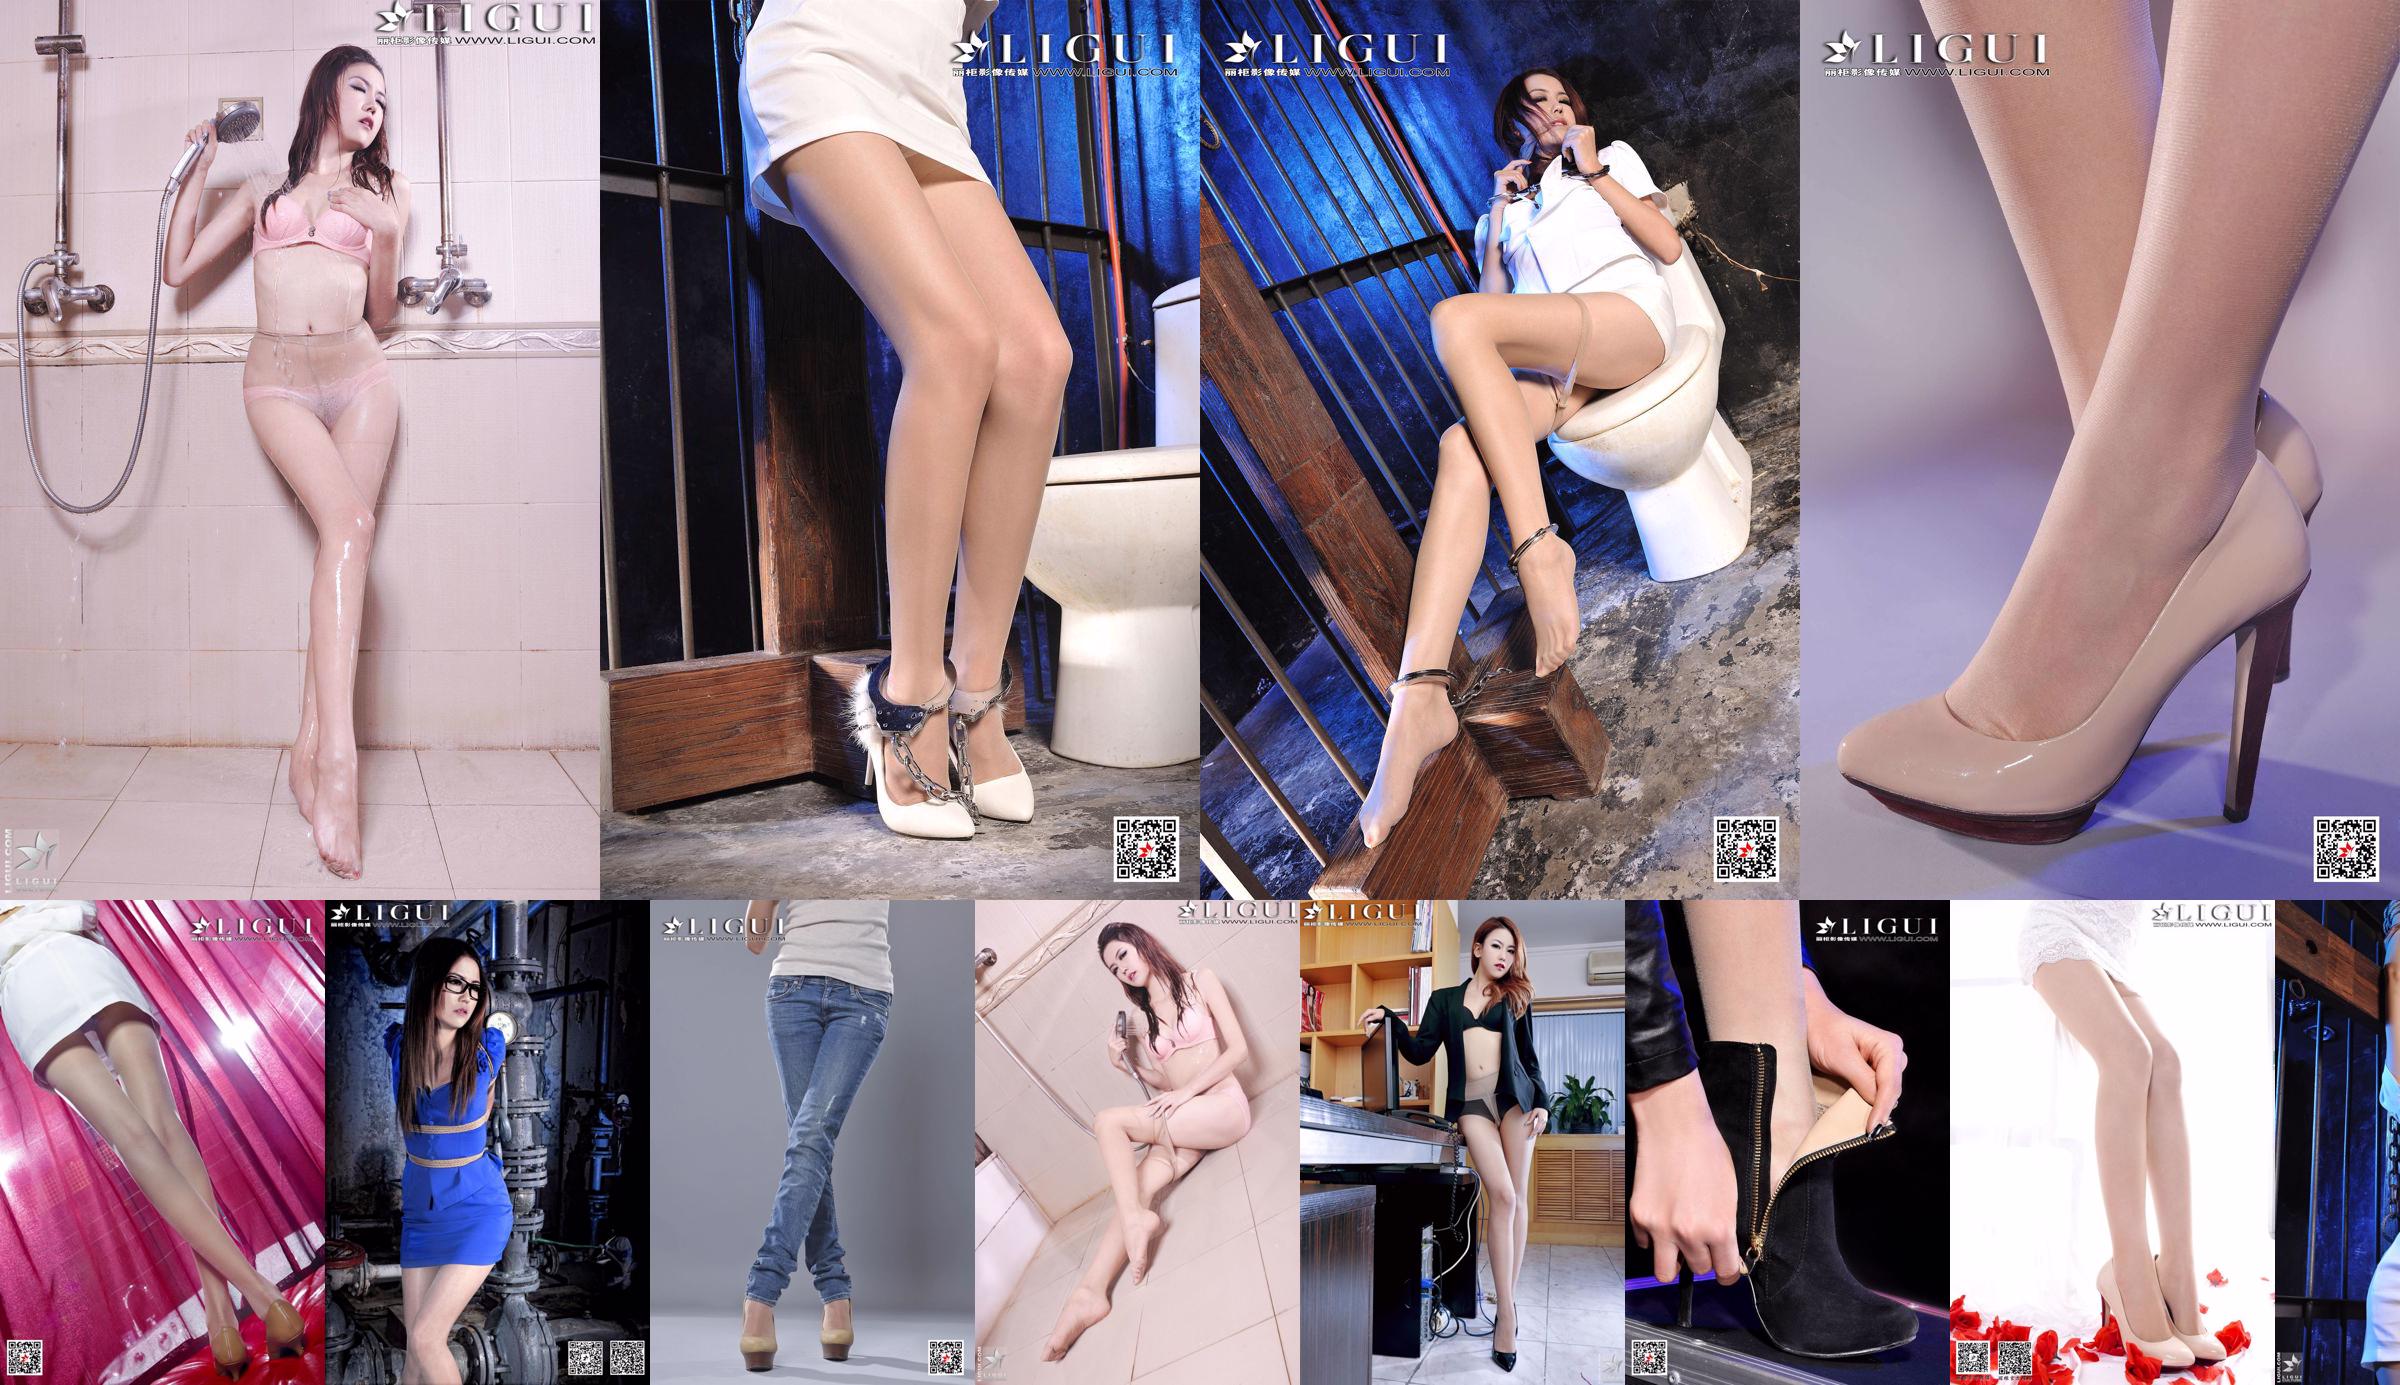 [丽 柜 LiGui] Người mẫu Kexin "Vẻ đẹp nơi làm việc với tất và chân bằng thịt" Ảnh chân đẹp và bàn chân ngọc bích của người mẫu Kexin No.f957f2 Trang 1